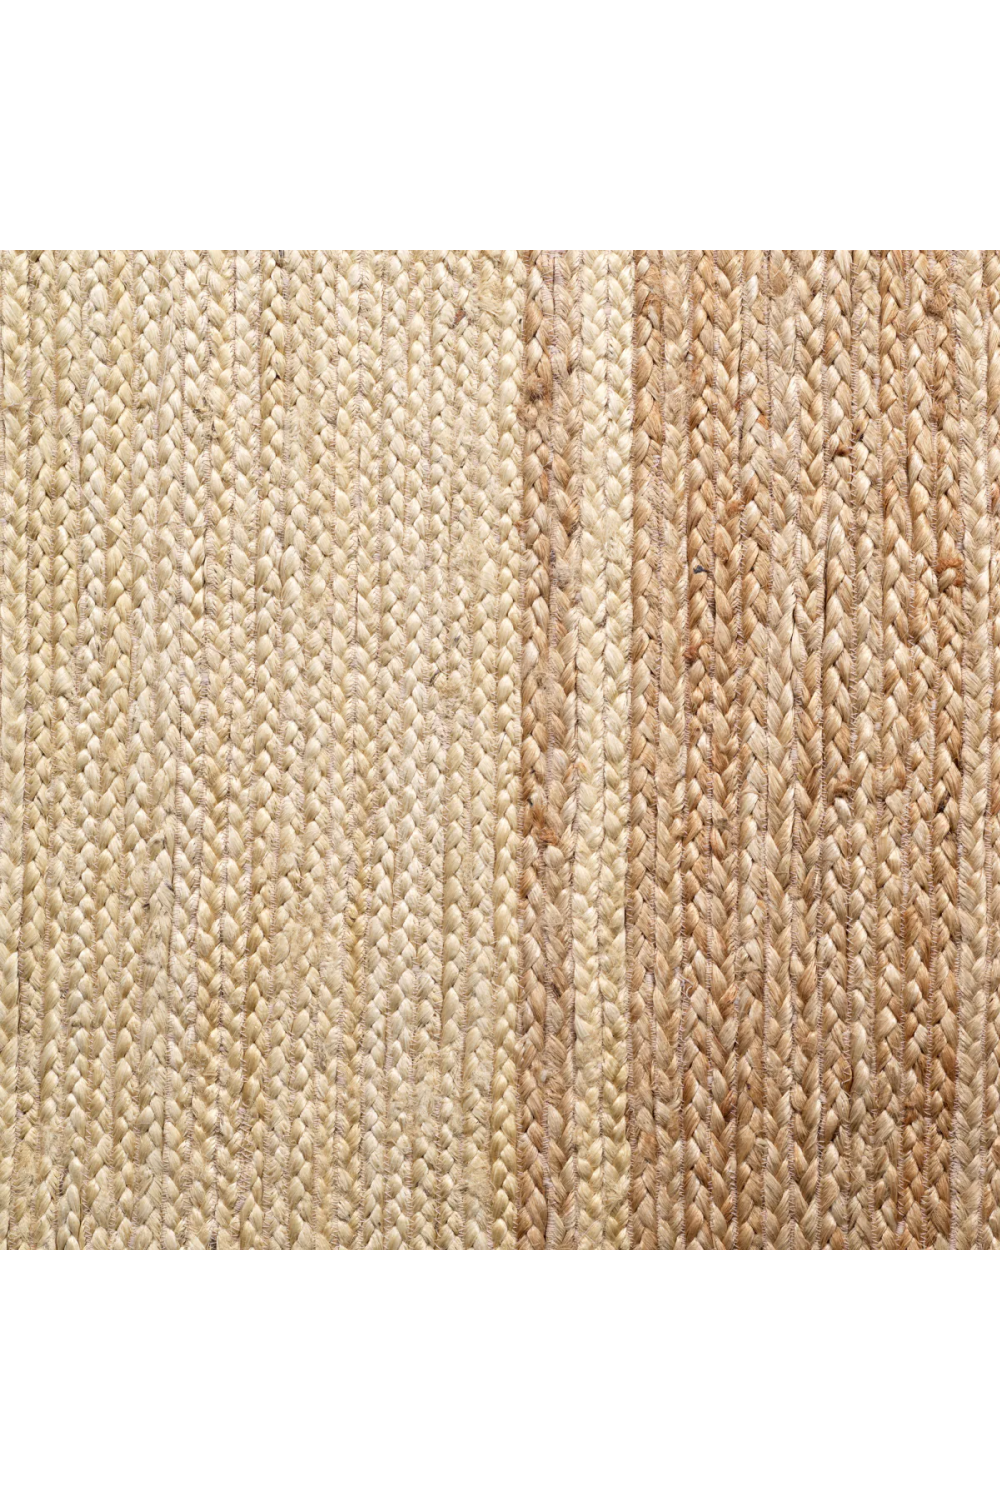 Handwoven Jute Carpet | Eichholtz Lorcan | Oroa.com